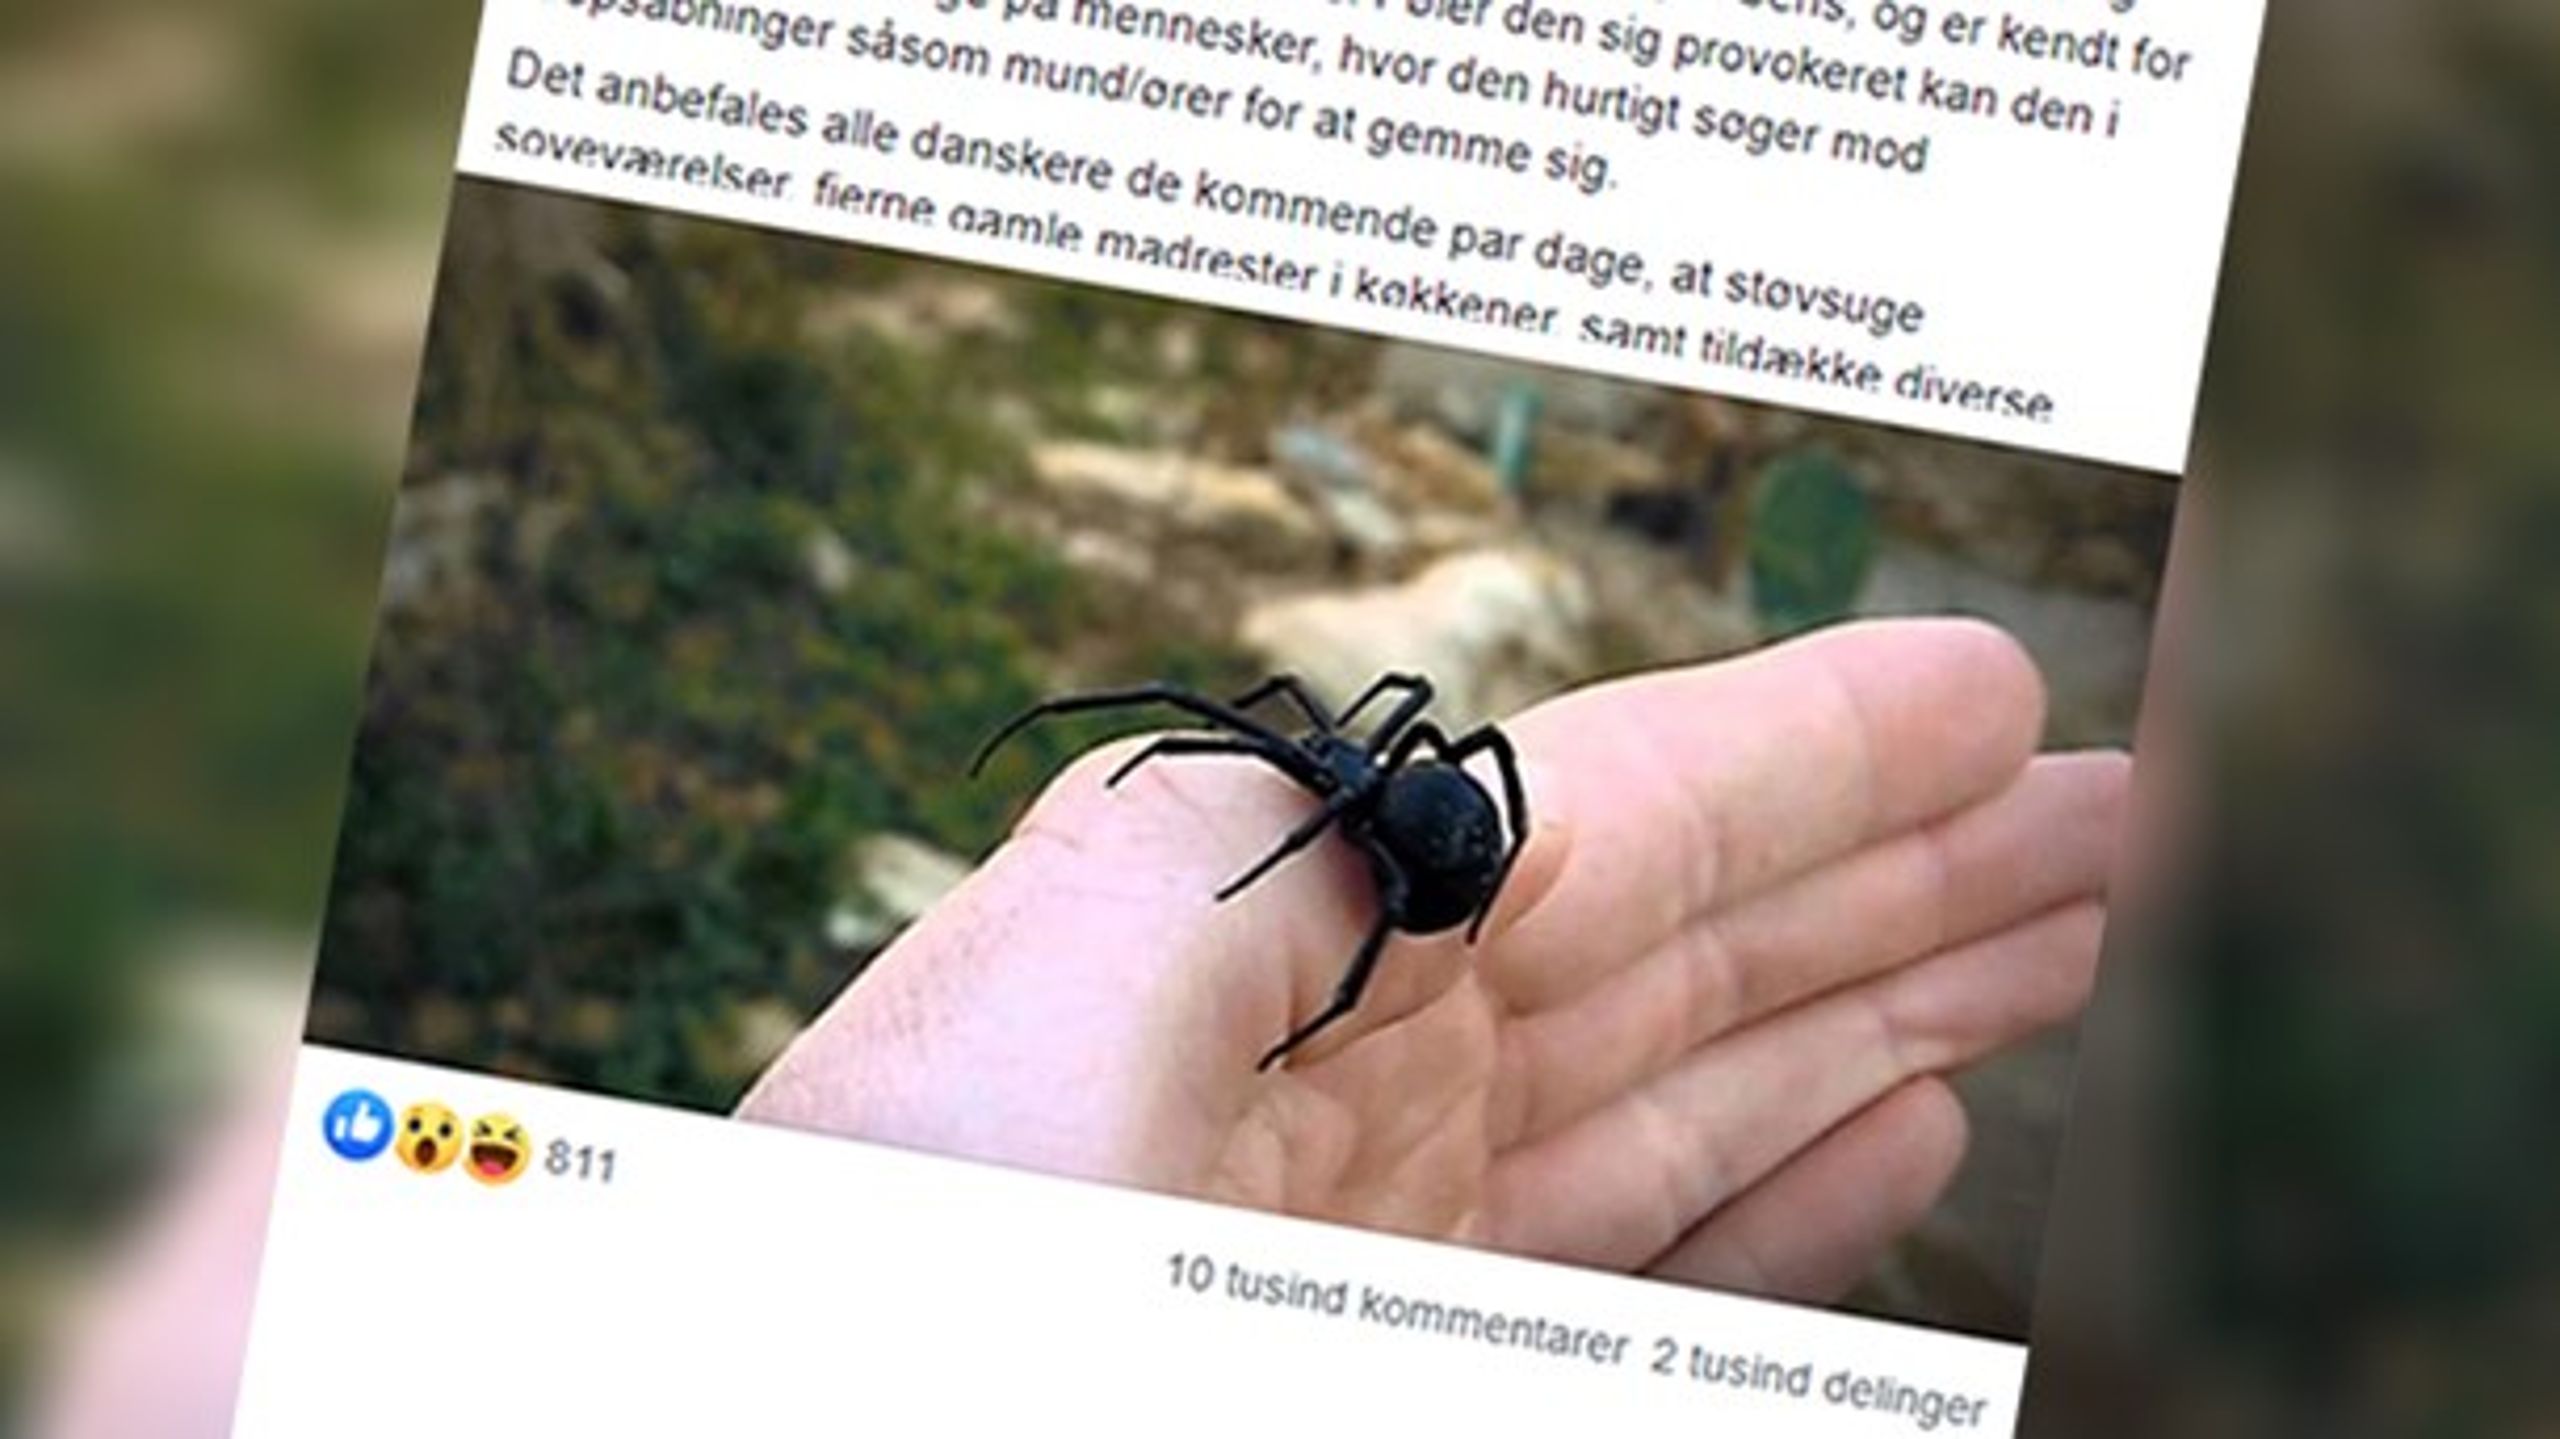 Tilpasset kopi af det vidt og bredt delte facebookopslag om den angiveligt farlige edderkop.